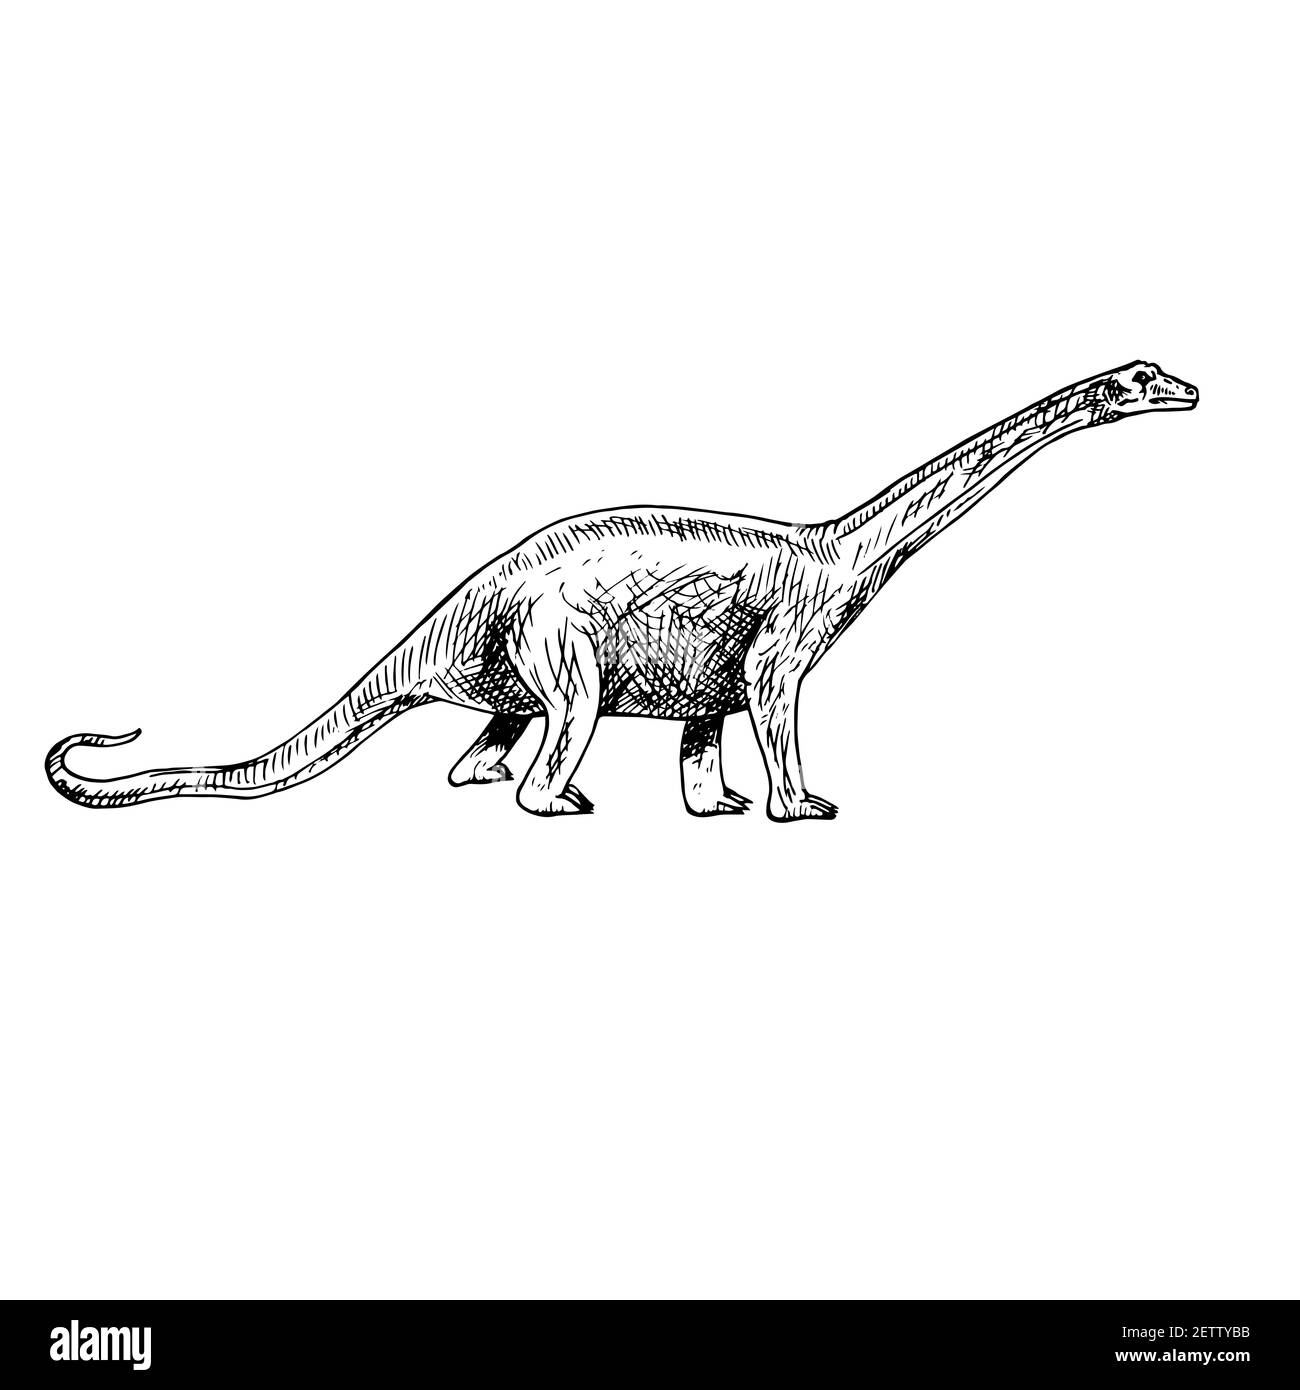 File:Diplodocus by Hay 1910.jpg - Wikipedia